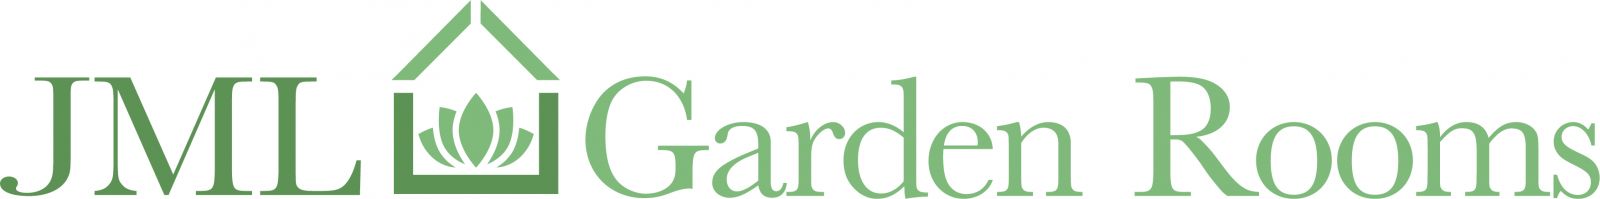 New Garden Rooms Logo